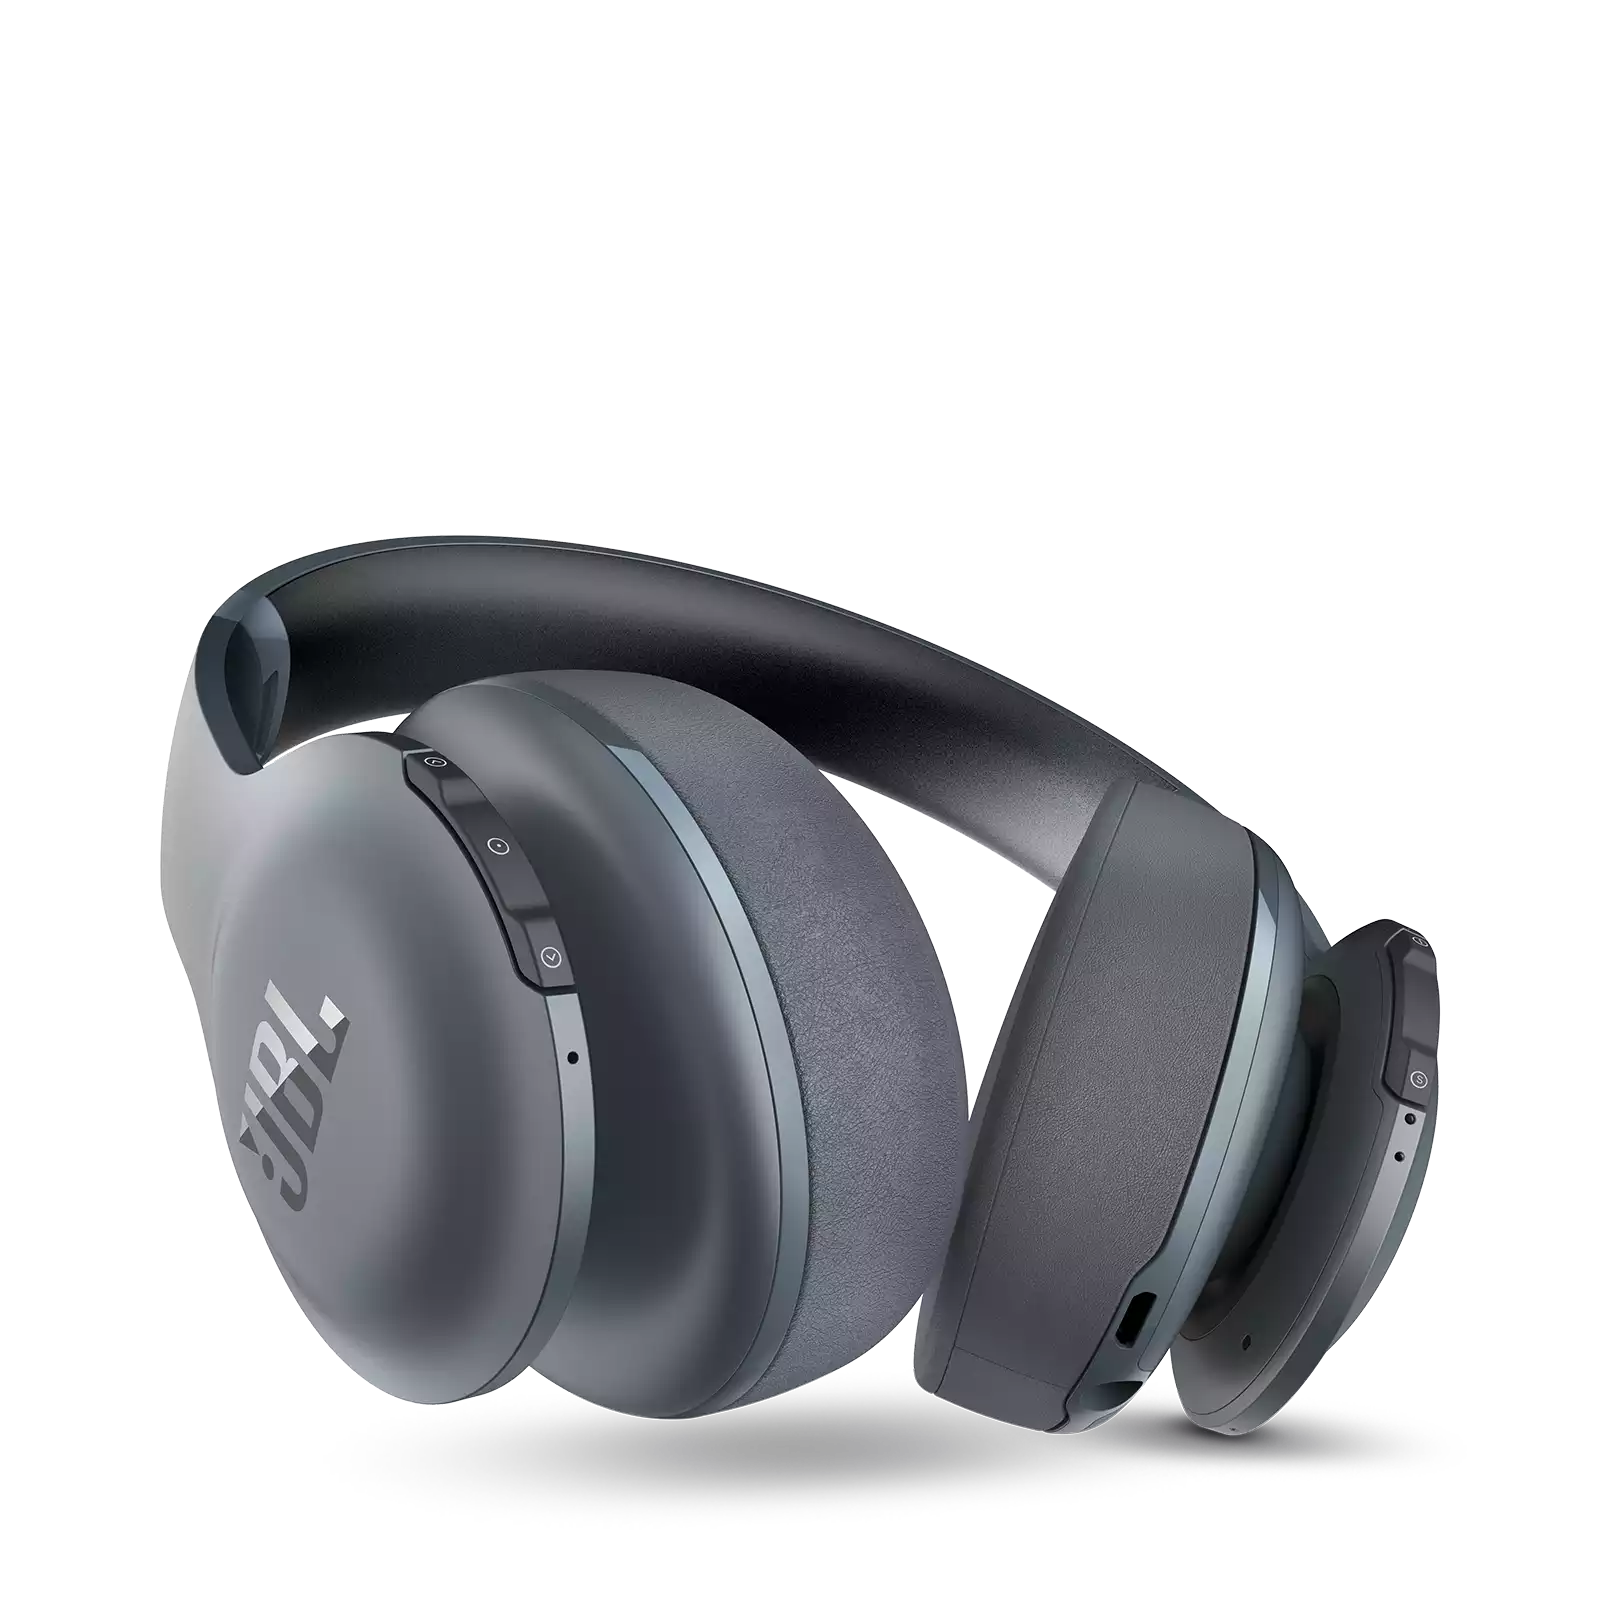 Tai Nghe Bluetooth On-ear JBL Everest 700 Chính Hãng